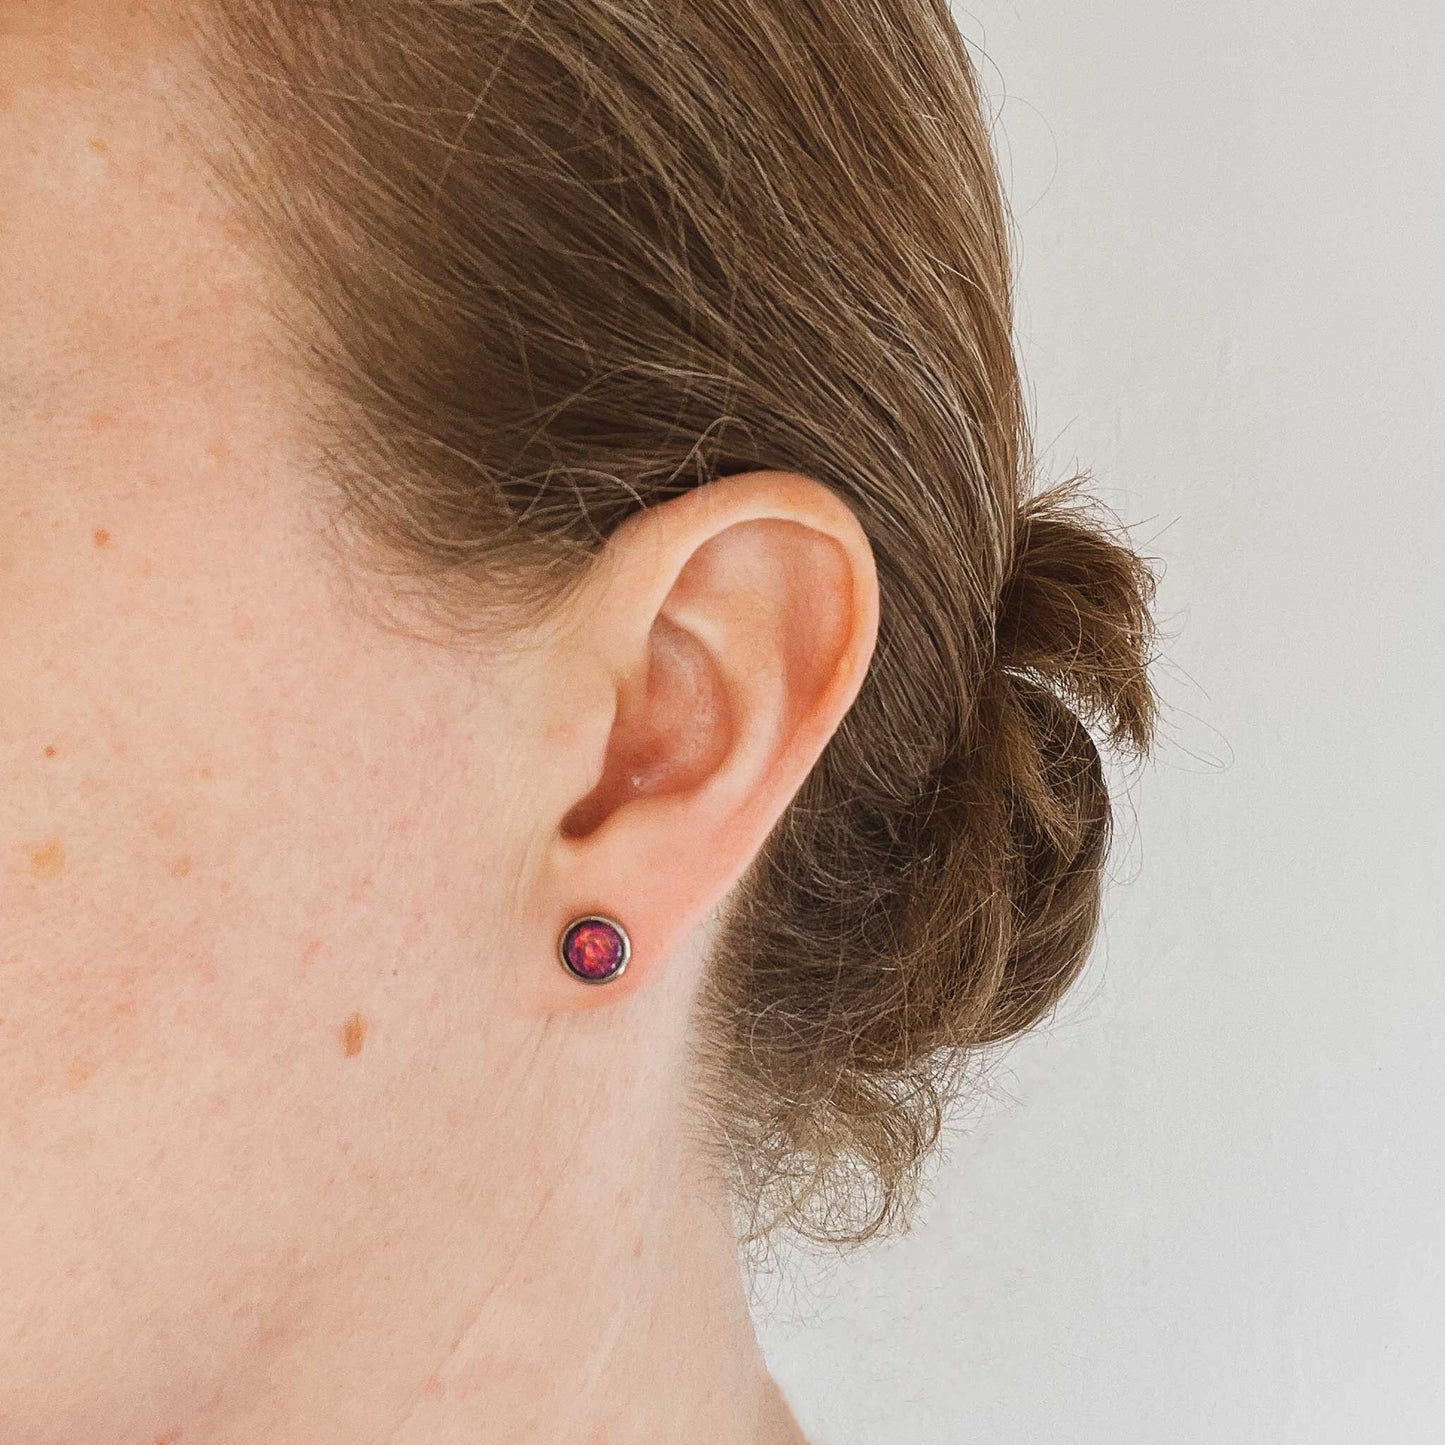 Woman wearing purple Opal stud earring in earlobe